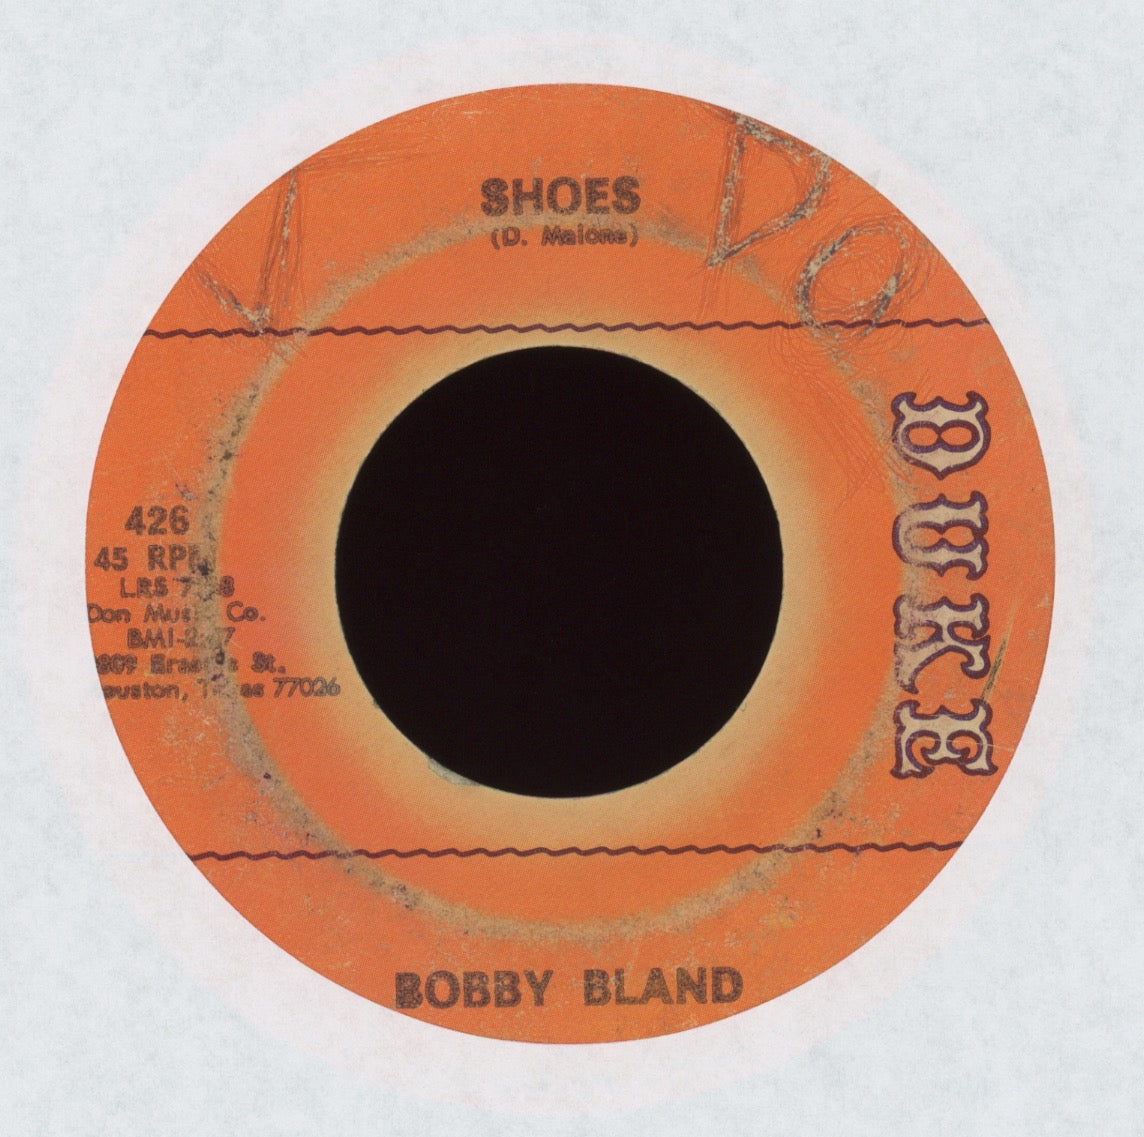 Bobby Bland - Shoes on Duke